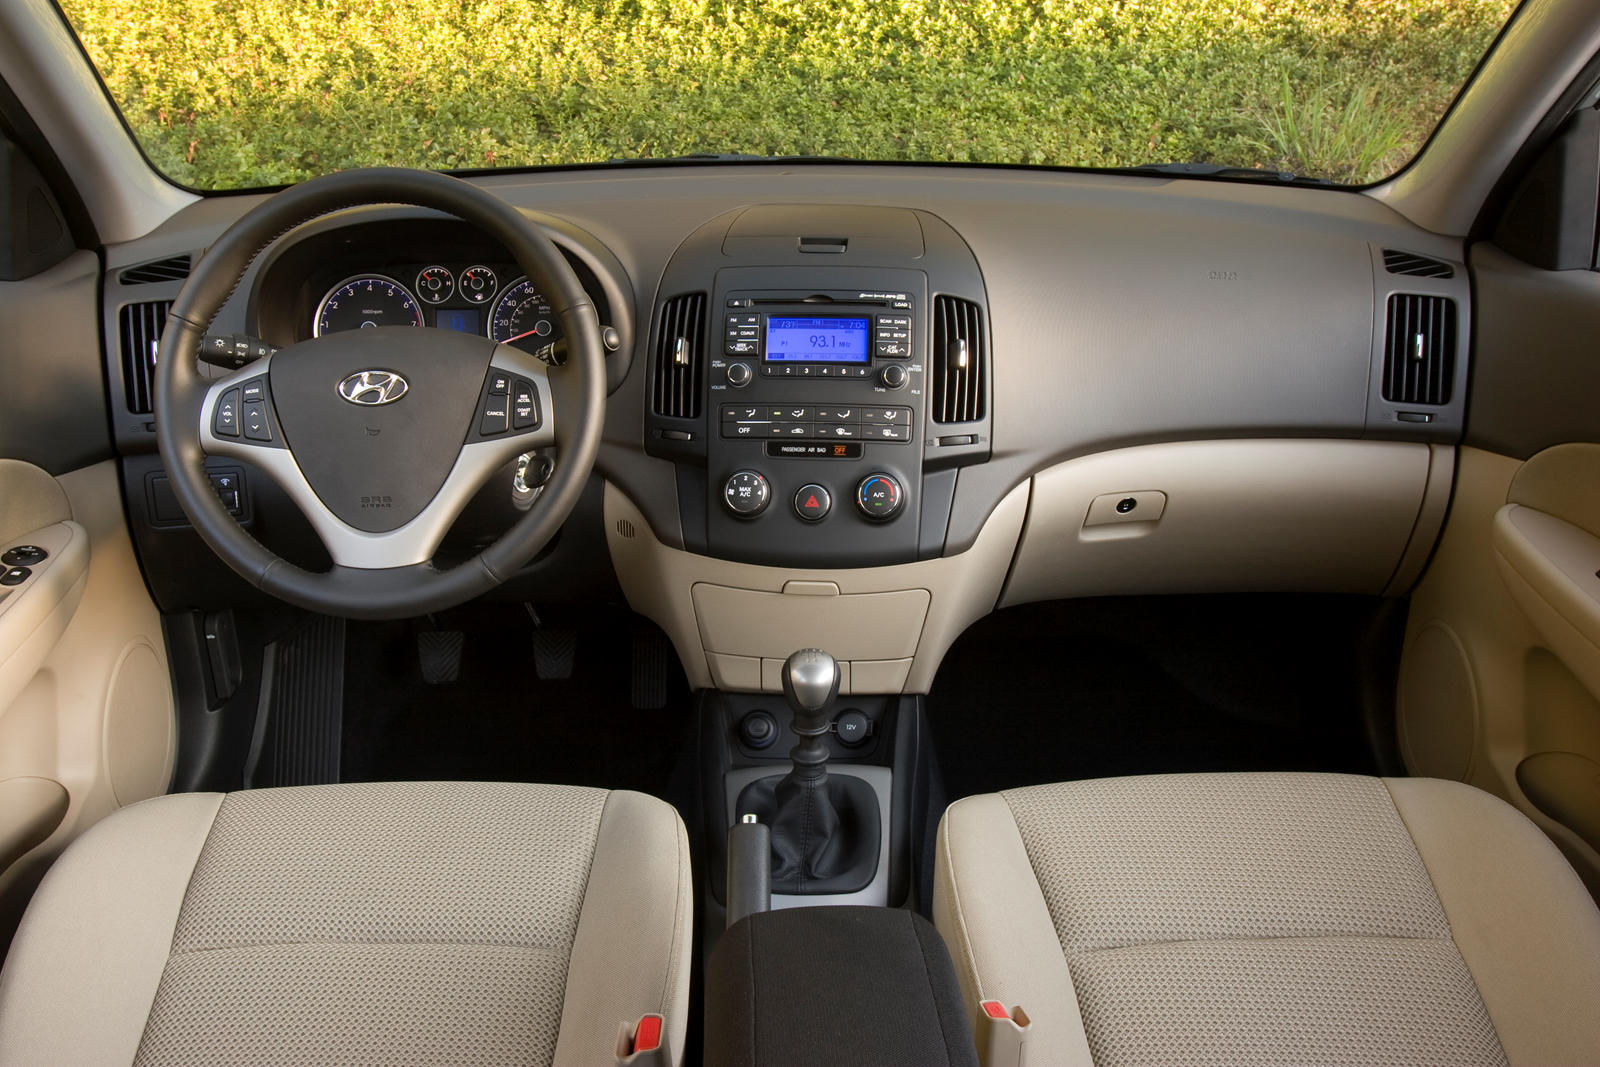 2011 Hyundai Elantra Touring Interior Photos | CarBuzz